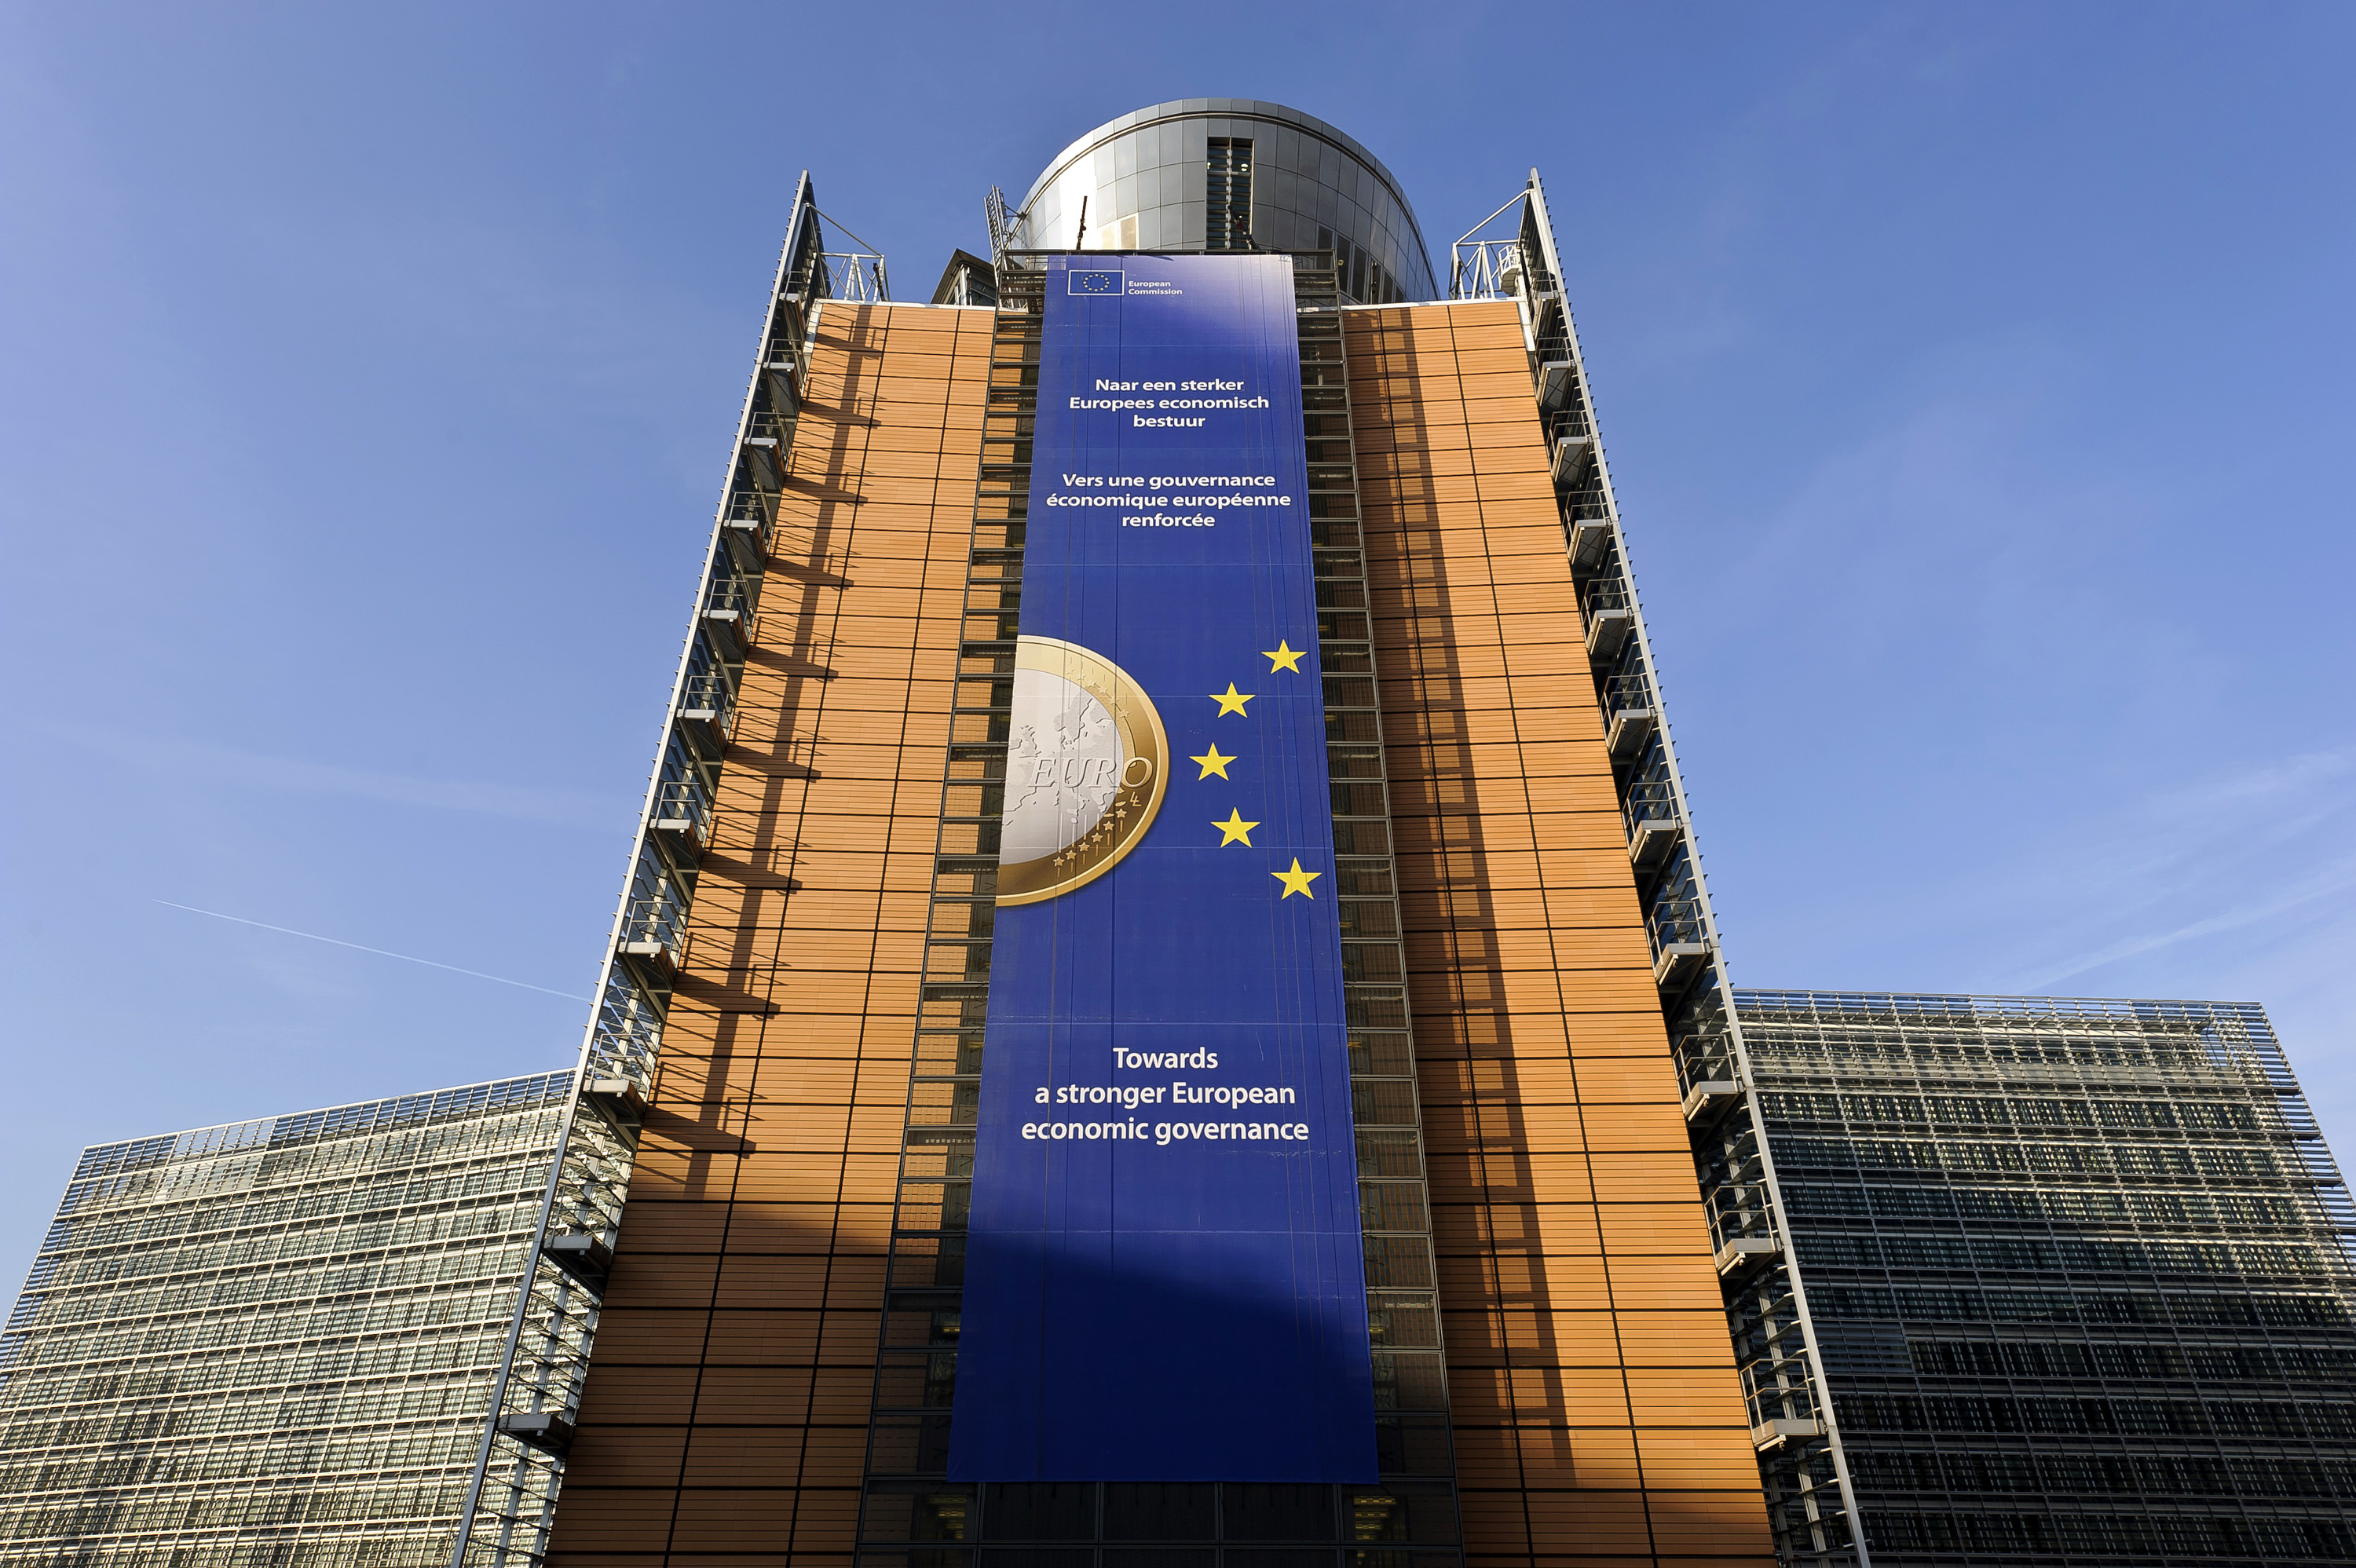 Κομισιόν: στην ατζέντα της προτάσεις για ευρωομόλογα και πειθαρχία